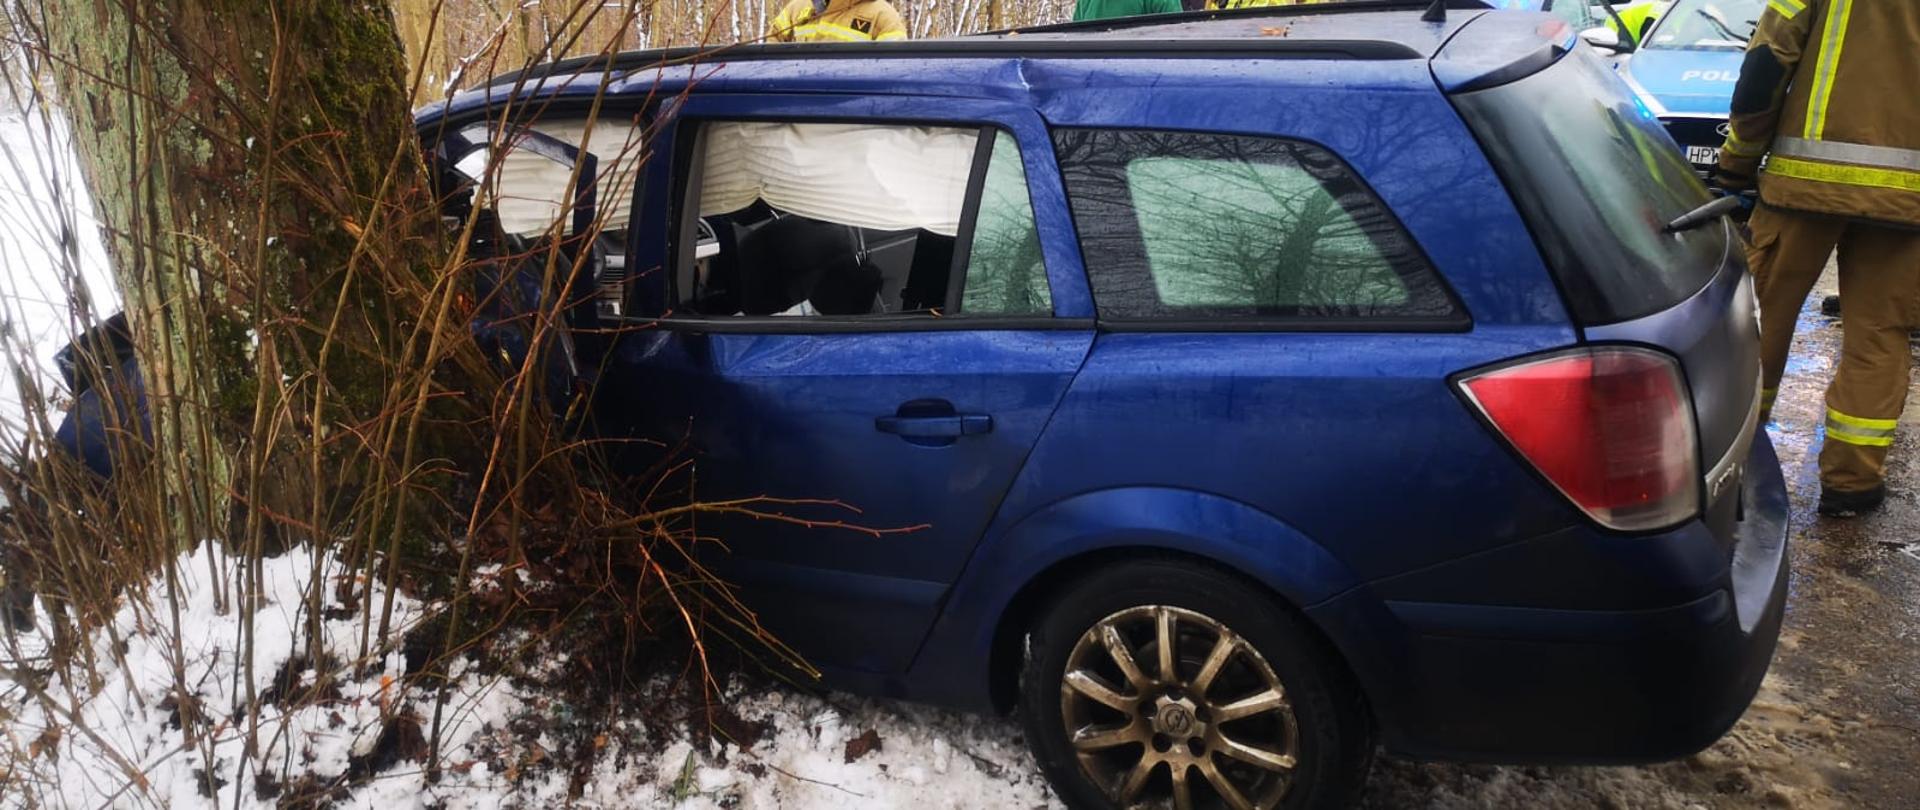 Zdjęcie przedstawia niebieski samochód po zderzeniu z drzewem. W tle strażacy i wóz strażacki